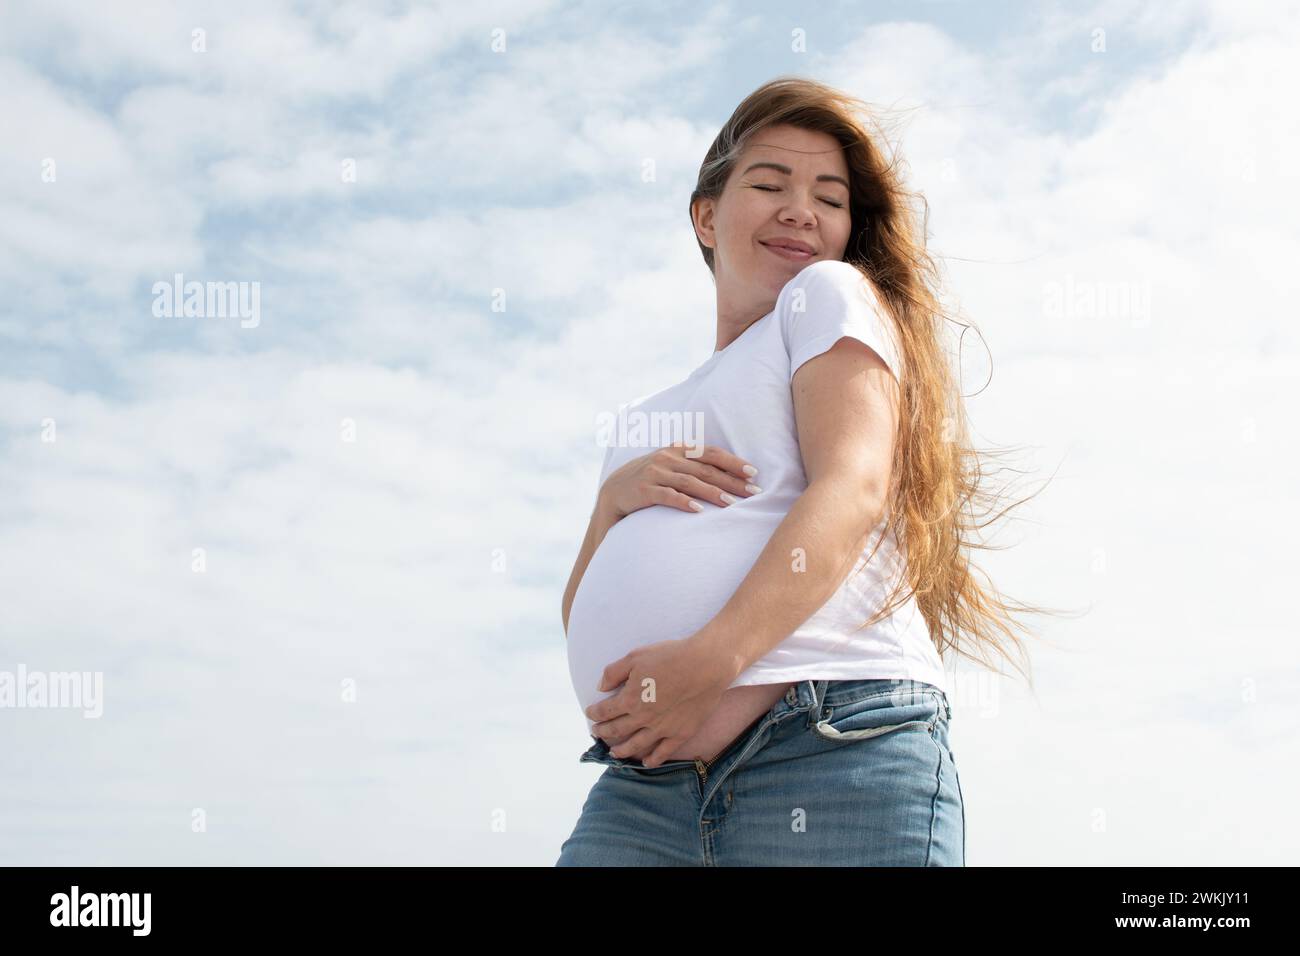 Heureuse femme enceinte caucasienne tenant son ventre sur le fond du ciel. t-shirt blanc et jeans. Troisième trimestre. Concept de grossesse heureuse Banque D'Images